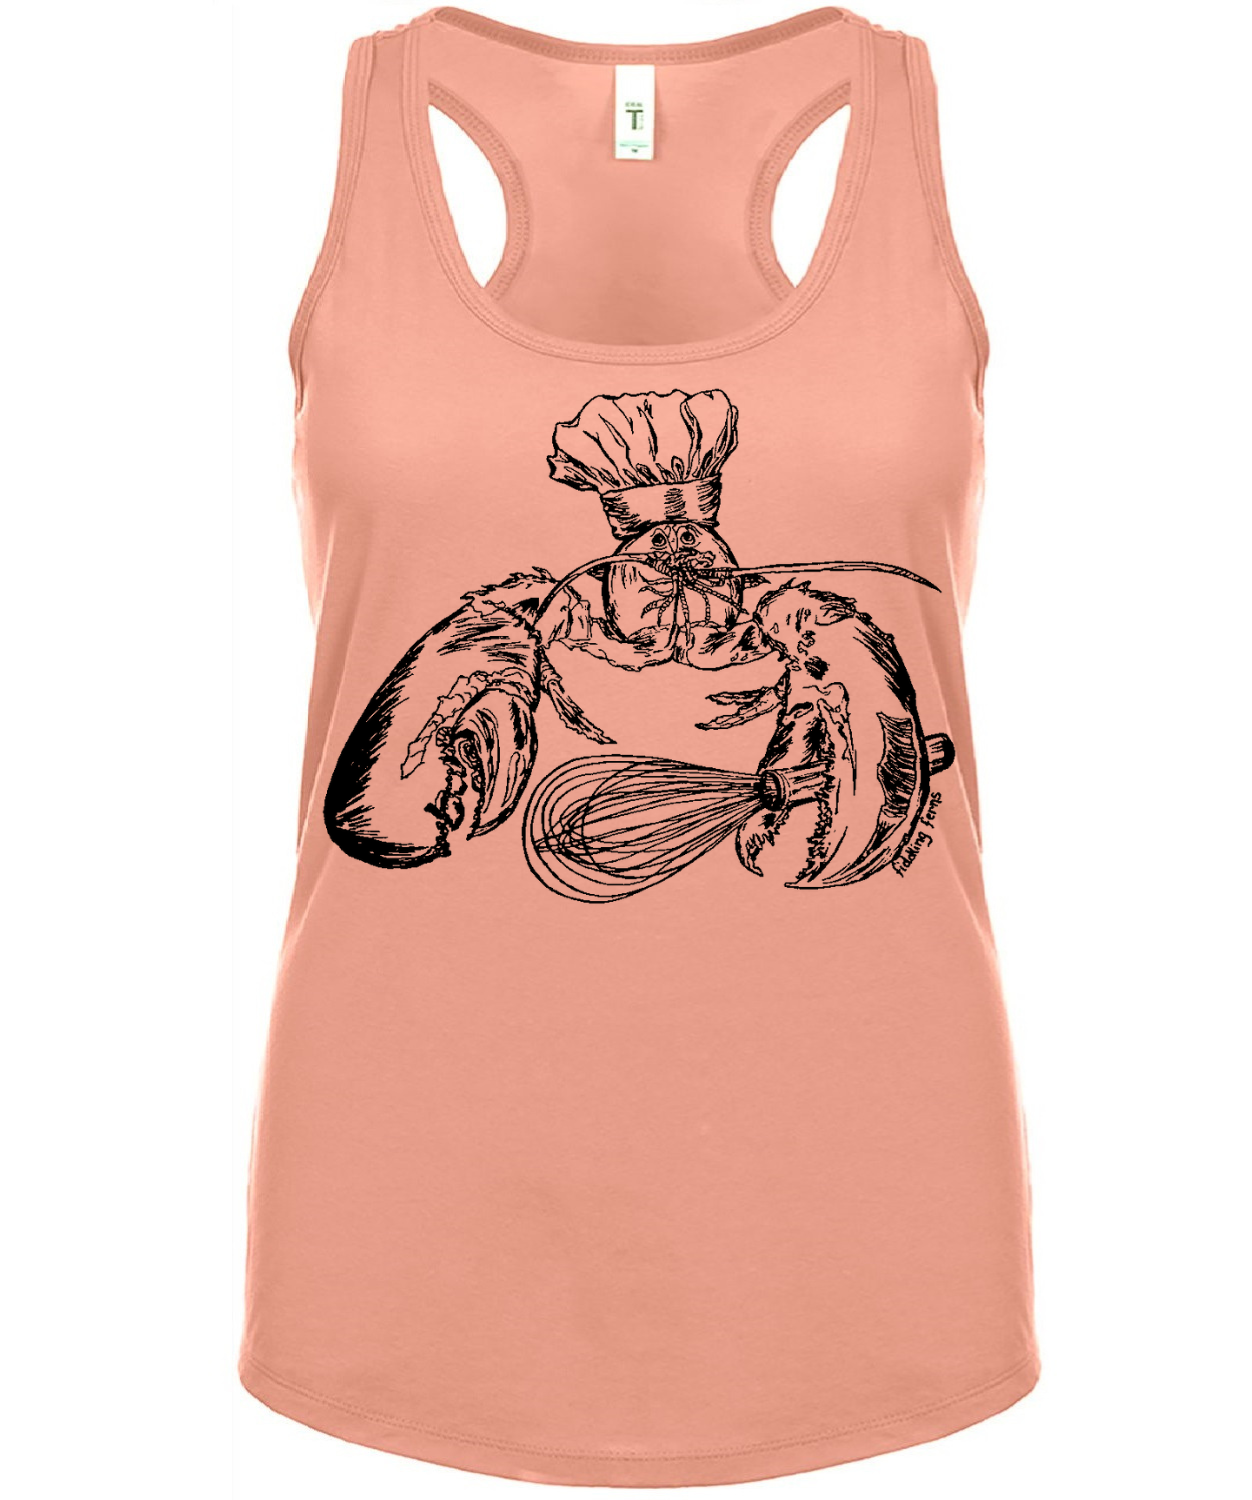 Chef Lobster Ladies Tank Top